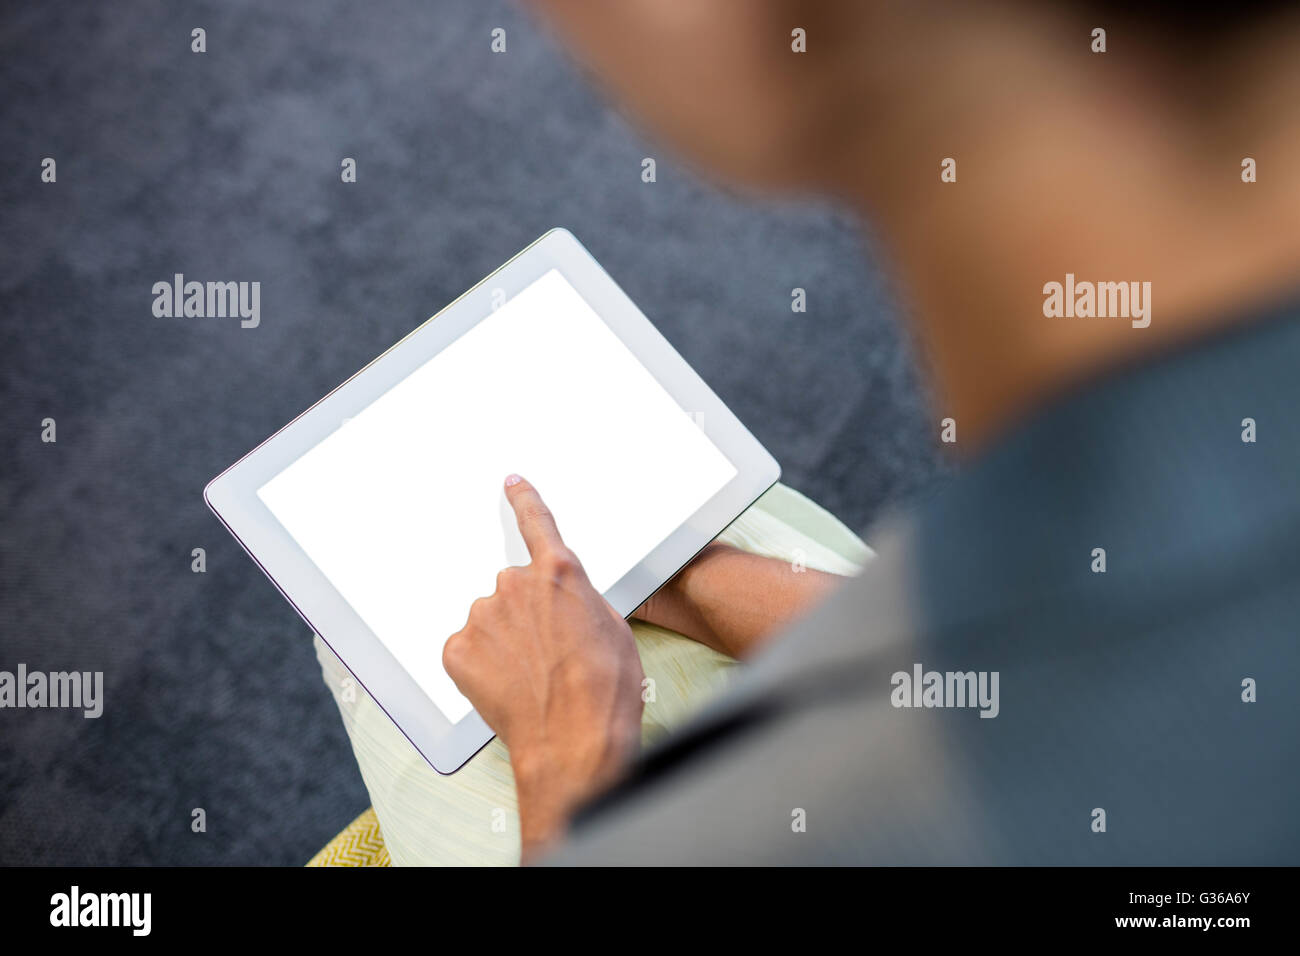 Hintergrund von Hand mit einem Tablet im Fokus Stockfoto